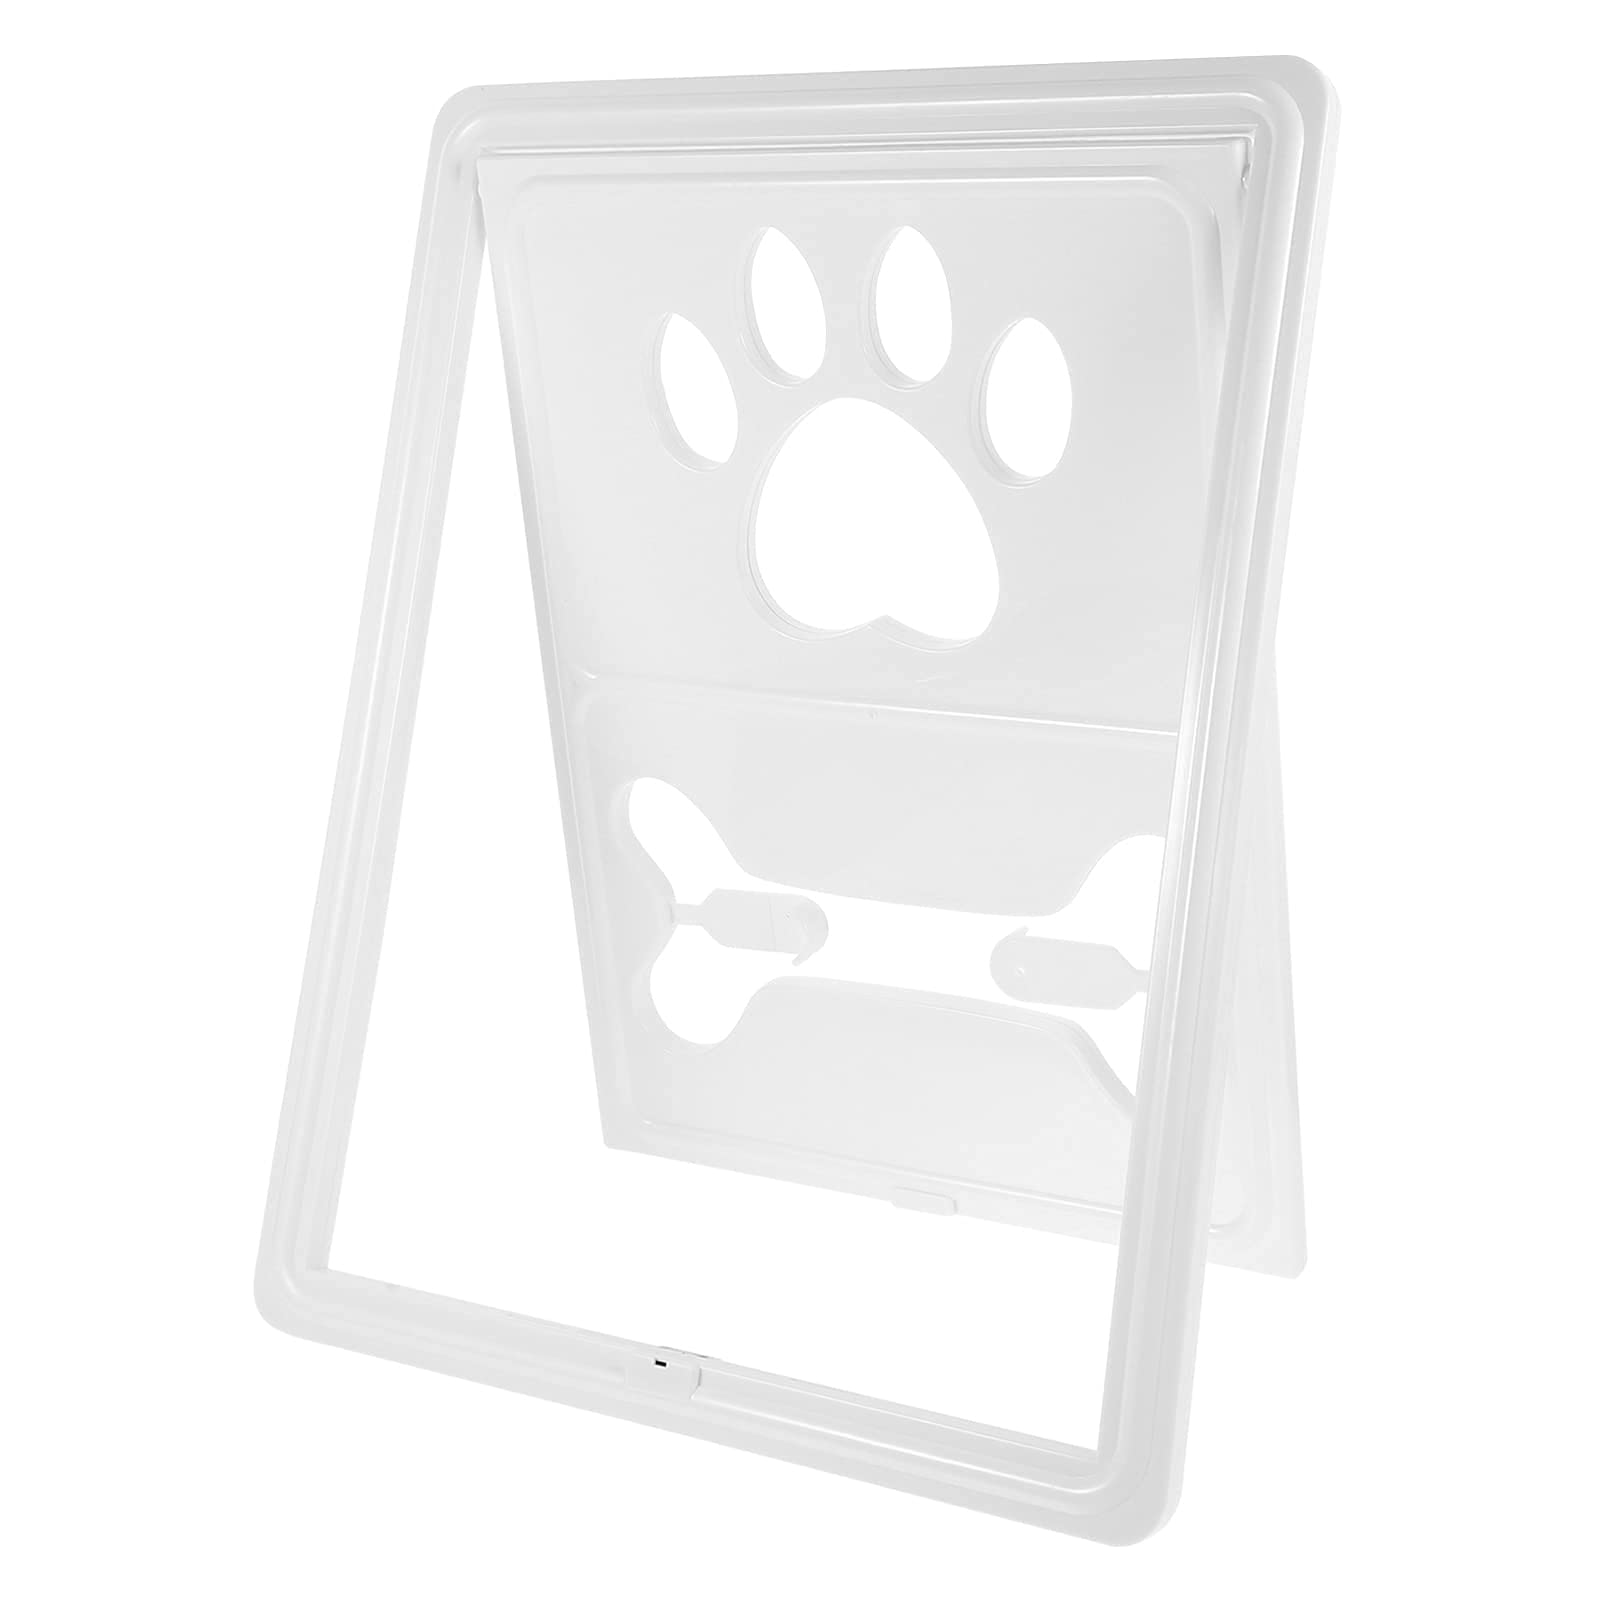 M I A Hundeschutztür Innentürklappe magnetisch selbstschließend Tür stabil Bildschirm Tür für Hunde Katzen Schwarz (Farbe: Weiß)